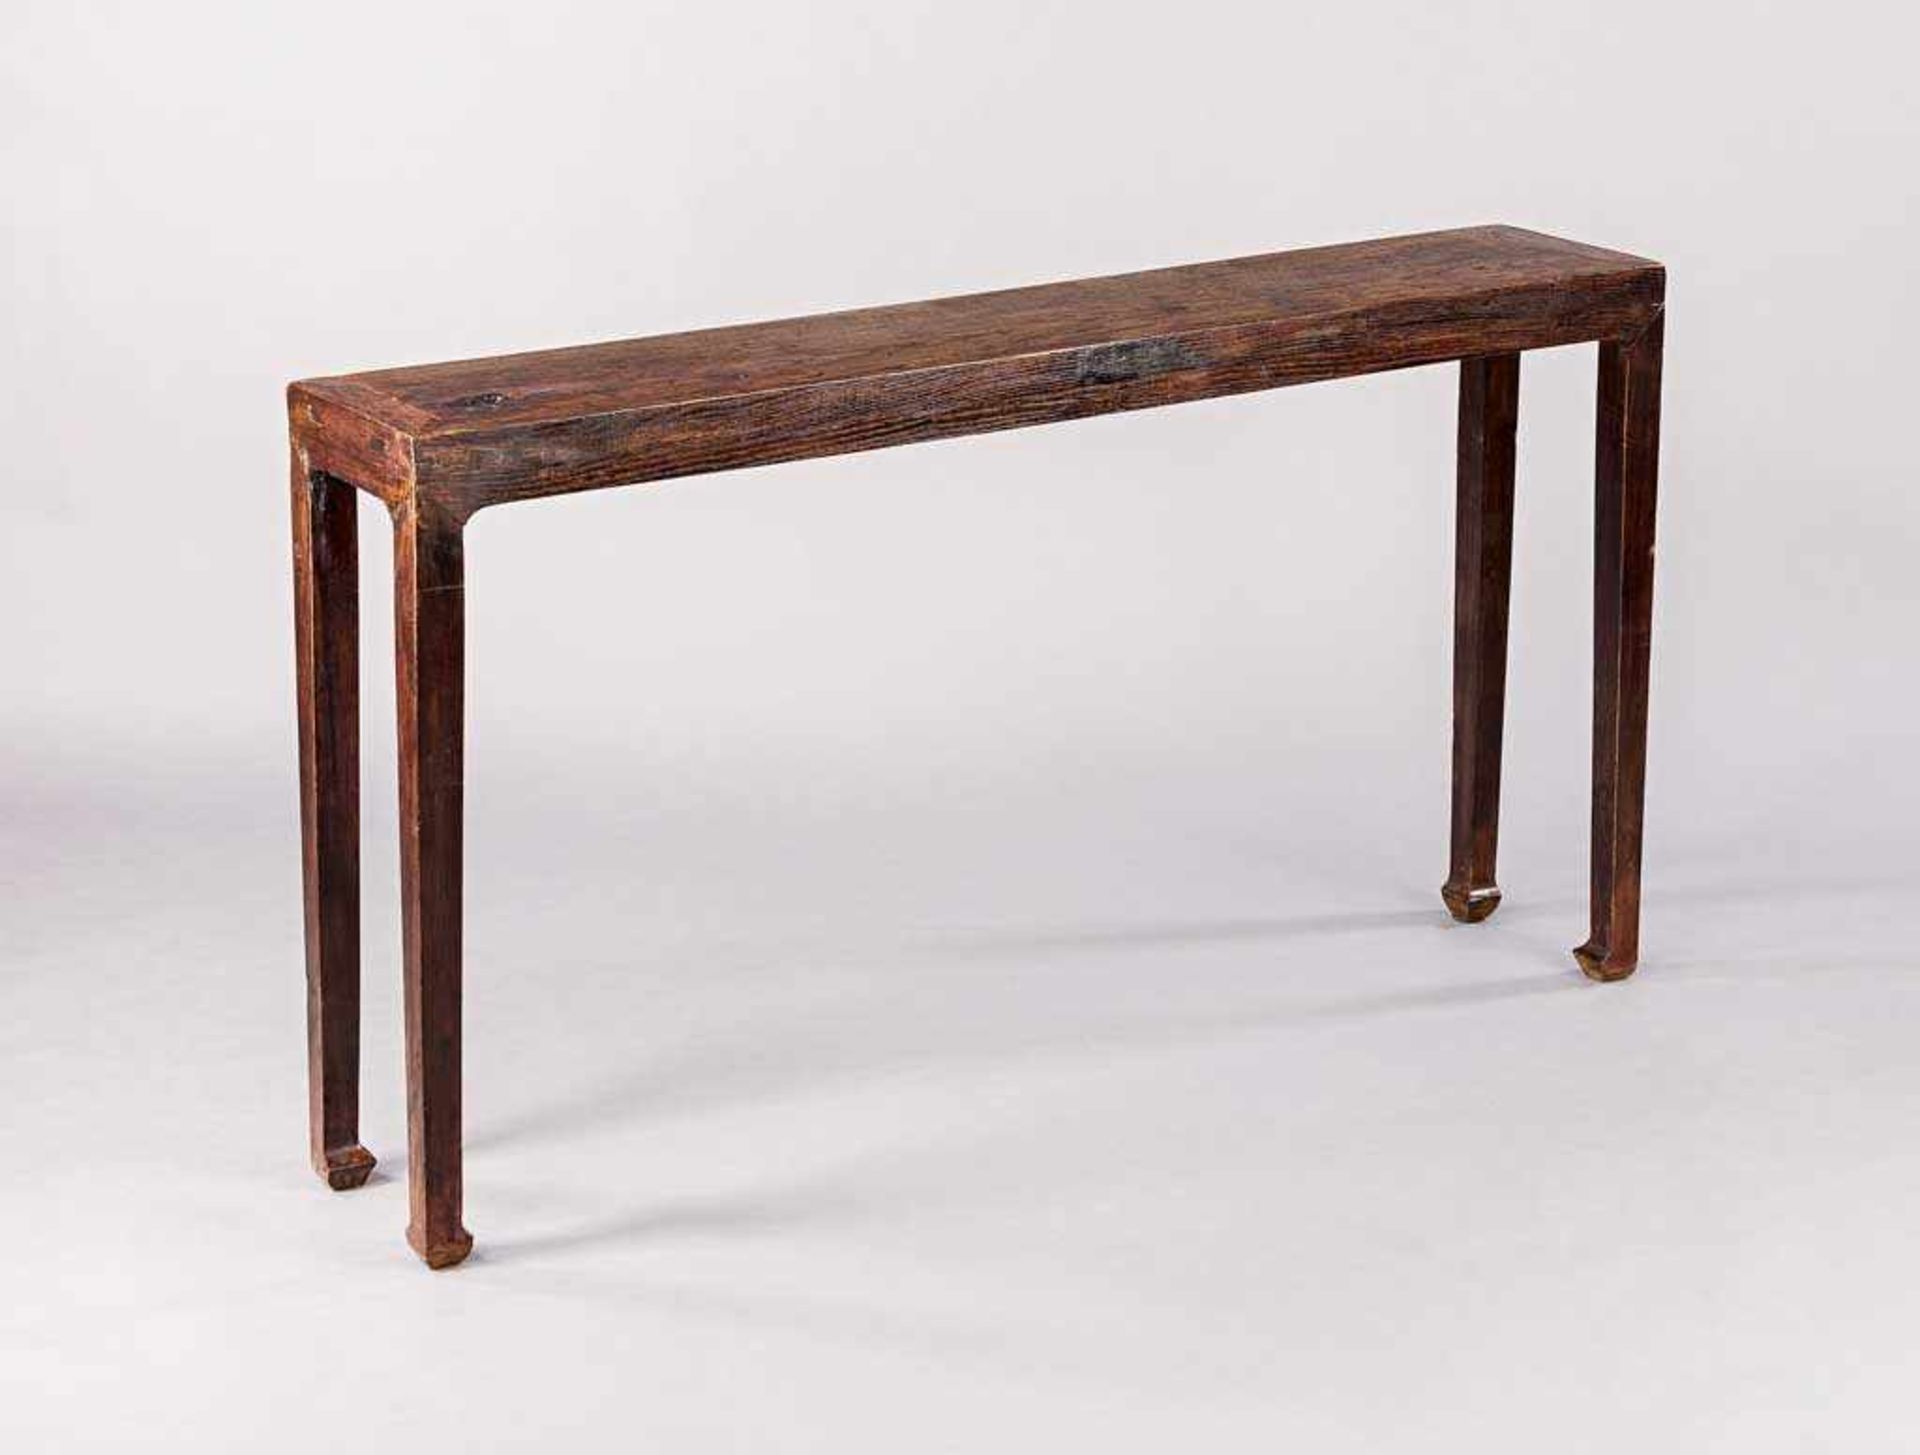 Chinesischer Tisch. Ulme. 85 x 124 x 29 cm